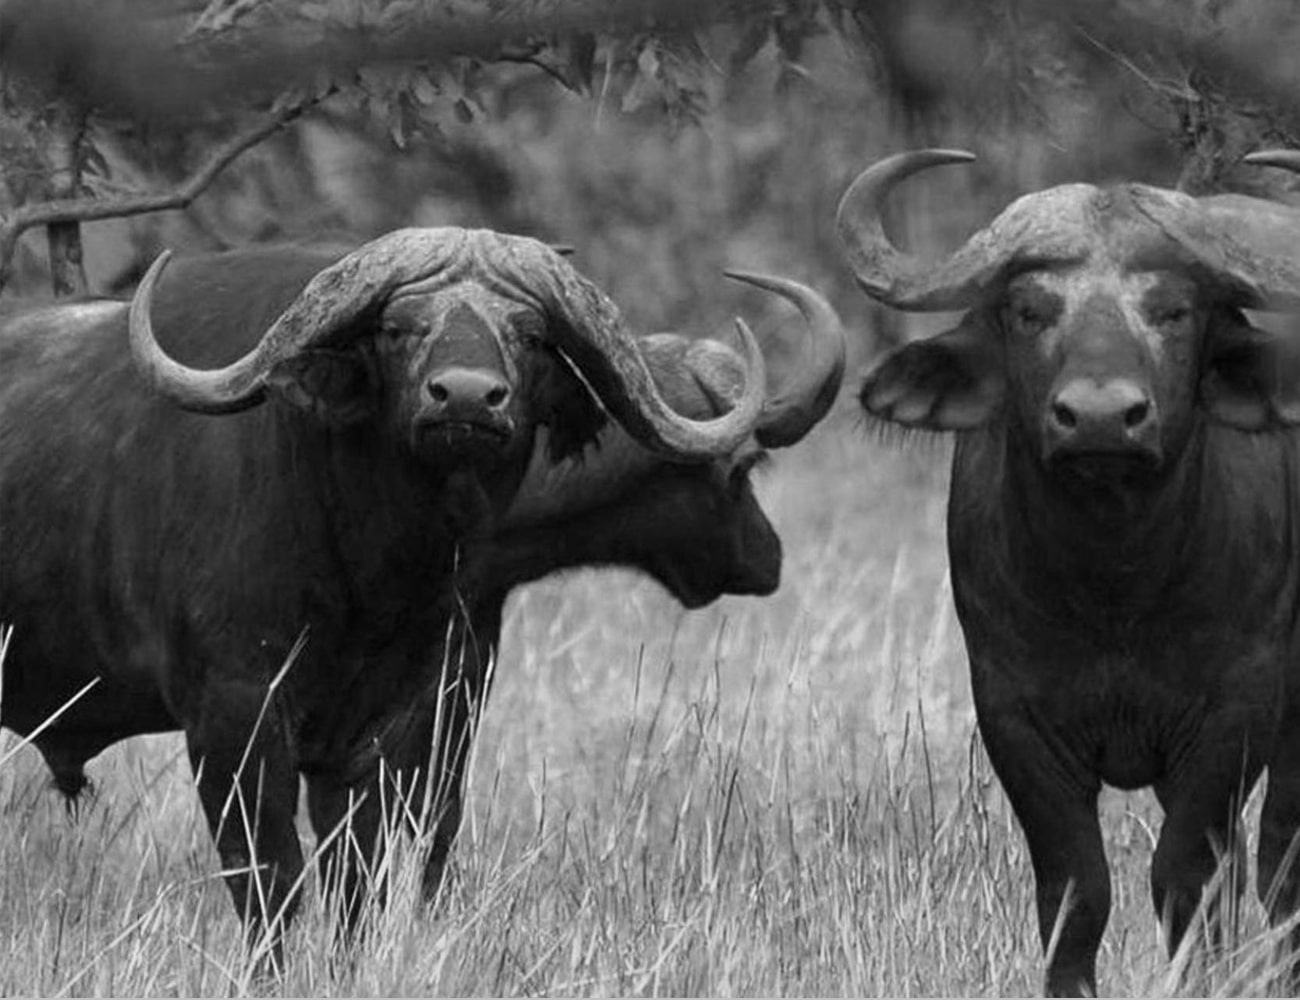 Buffaloes at Arusha National Park